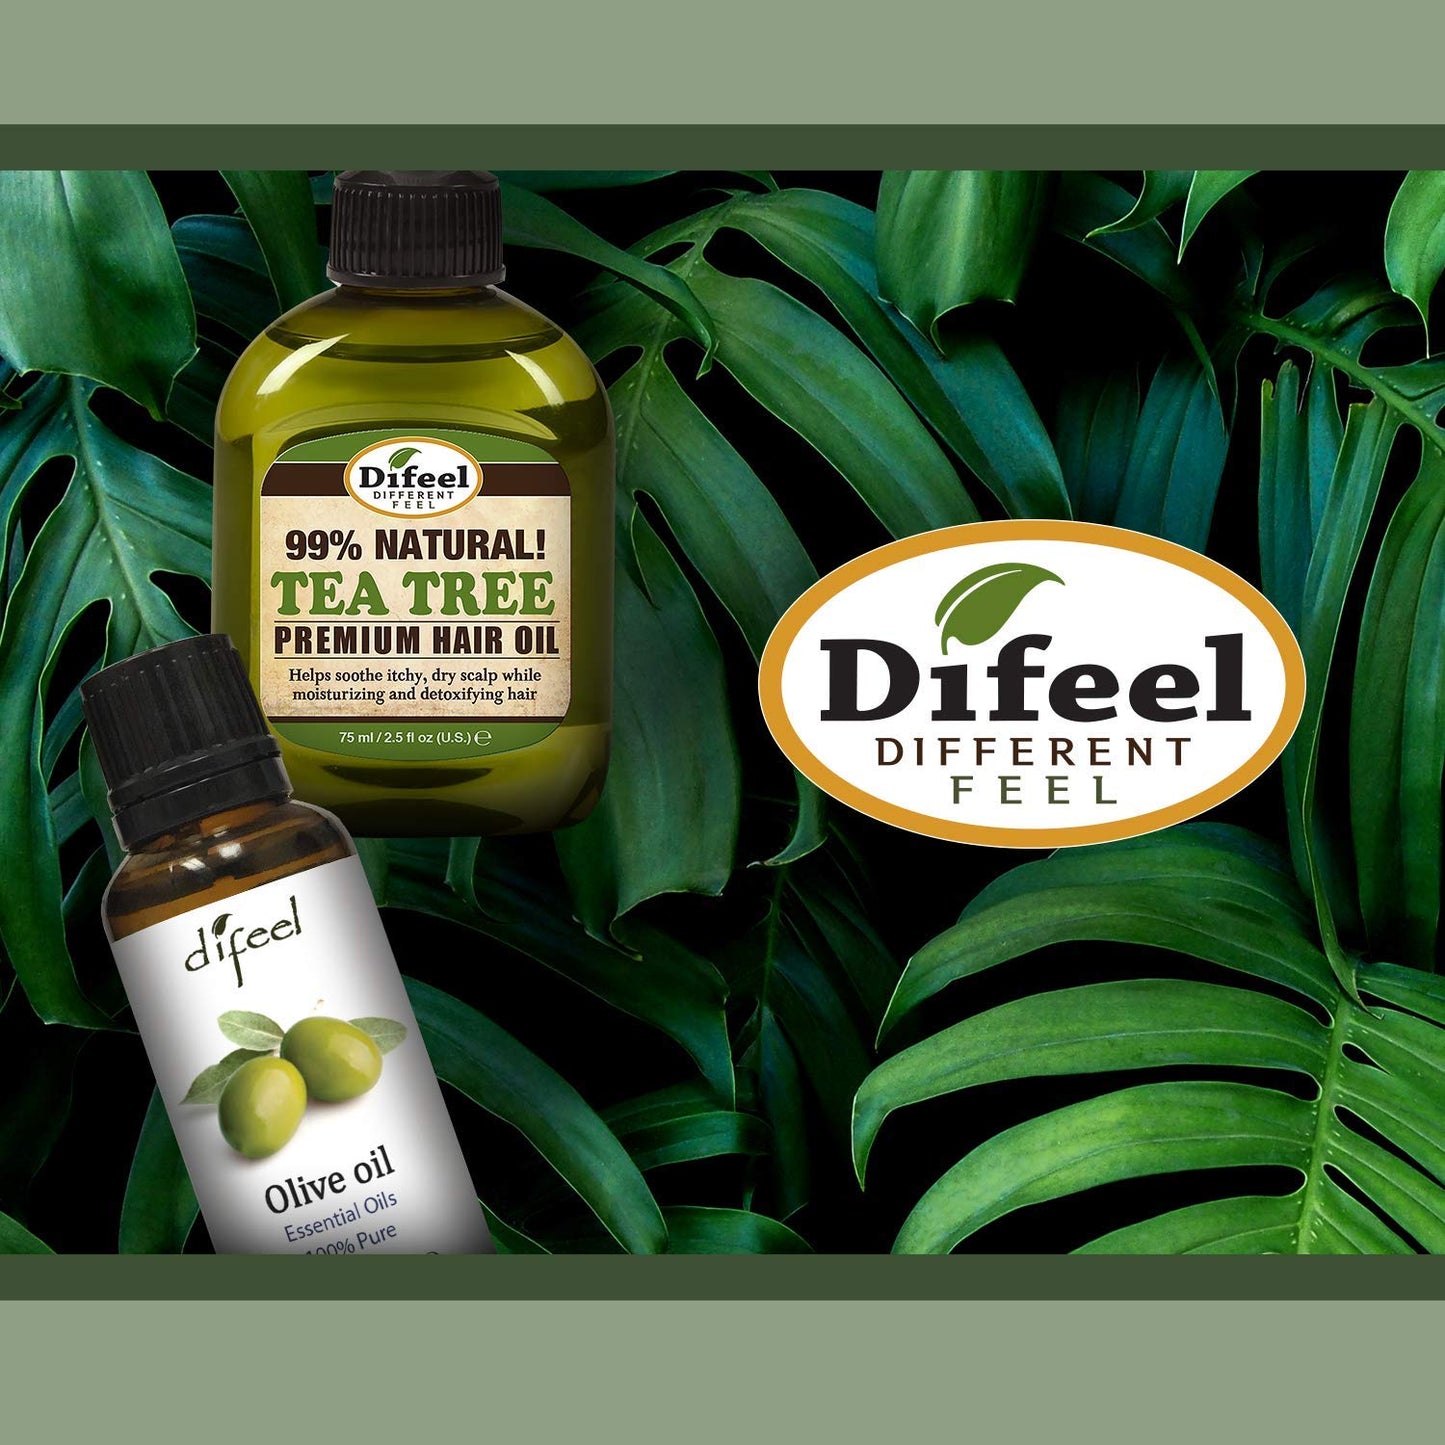 Premium Natural Hair Oil - Peppermint Oil 2.5 ounce